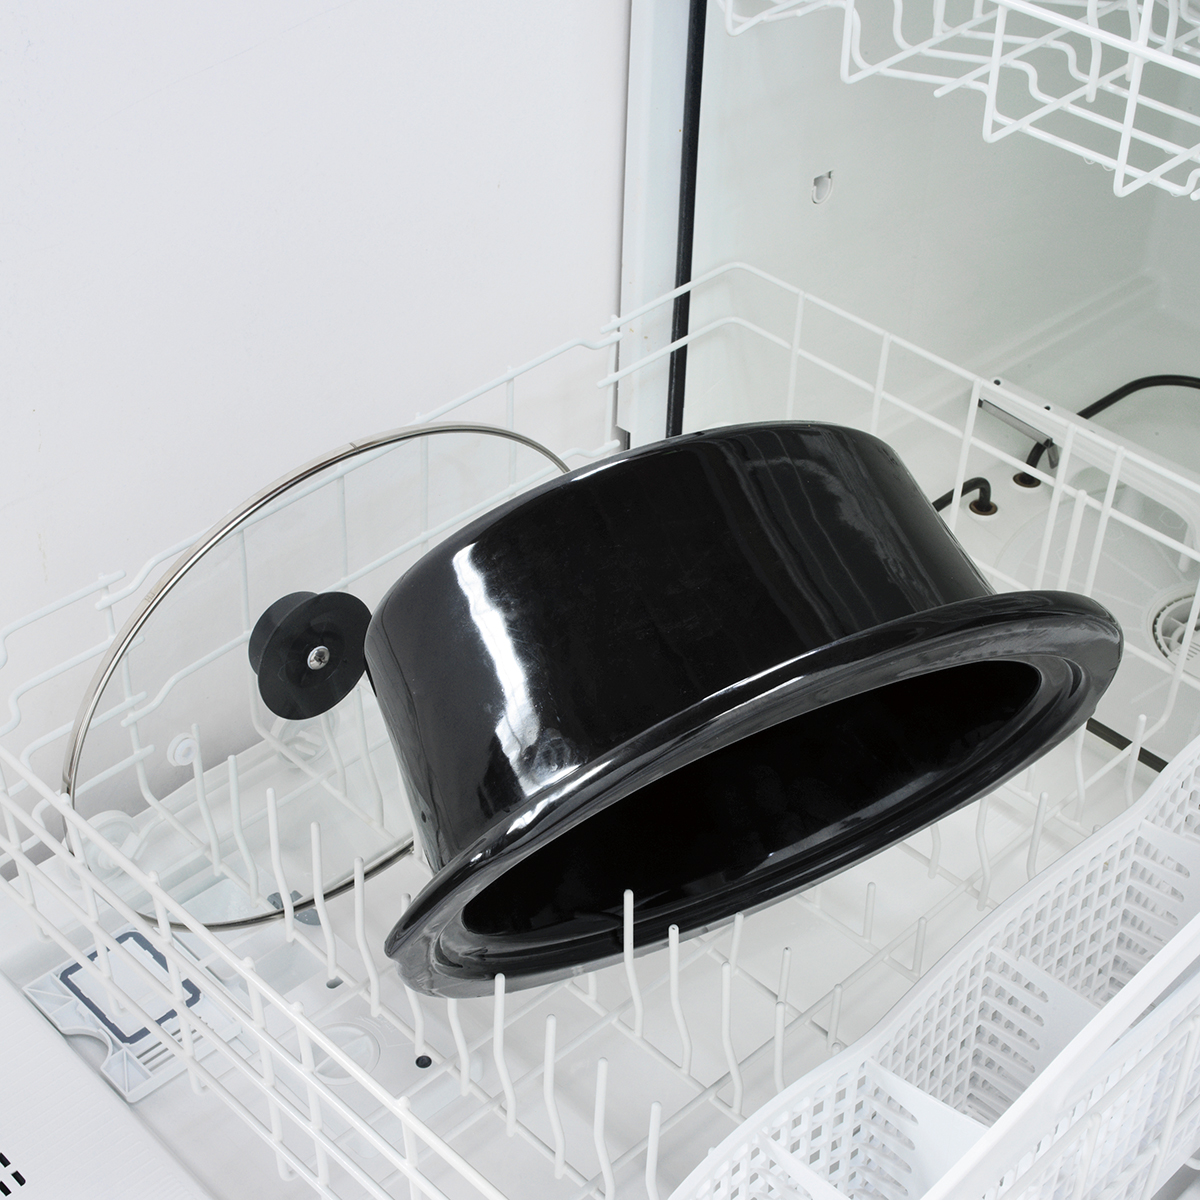 Most slow cooker crocks and lids are dishwasher safe.